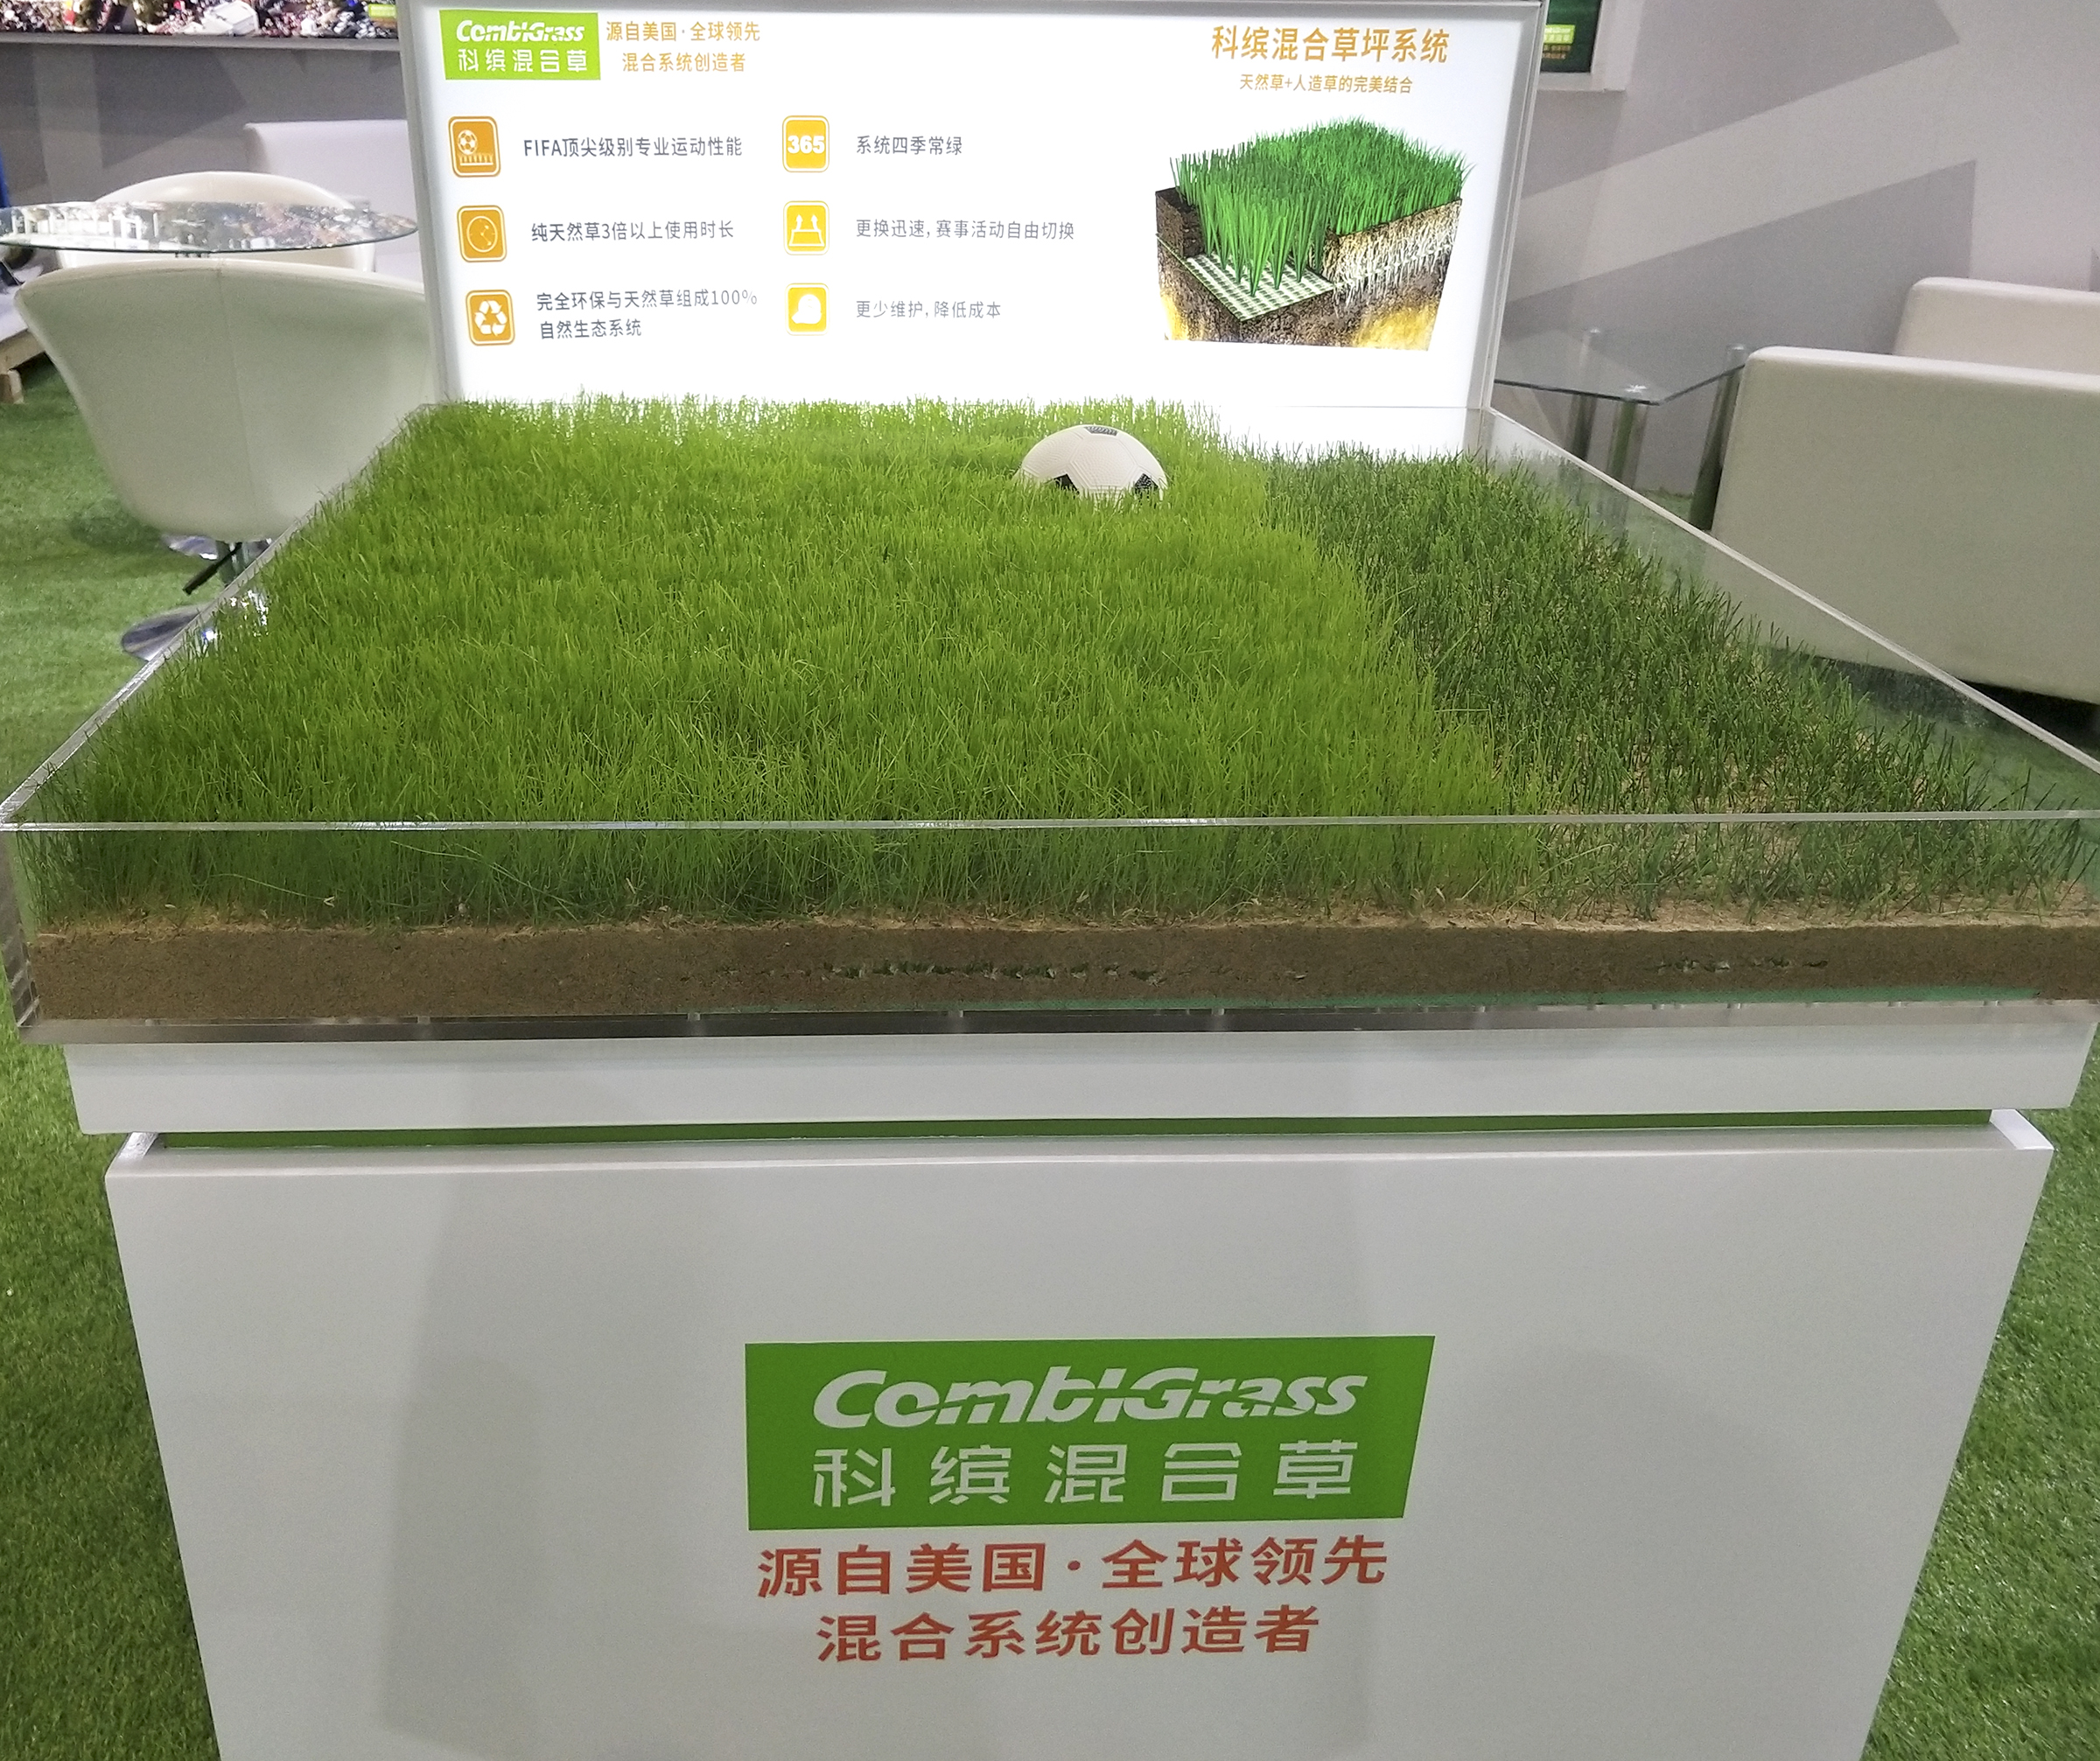 携手品牌打造运动未来科缤天然人造混合草坪系统成功亮相上海体博会beat365在线